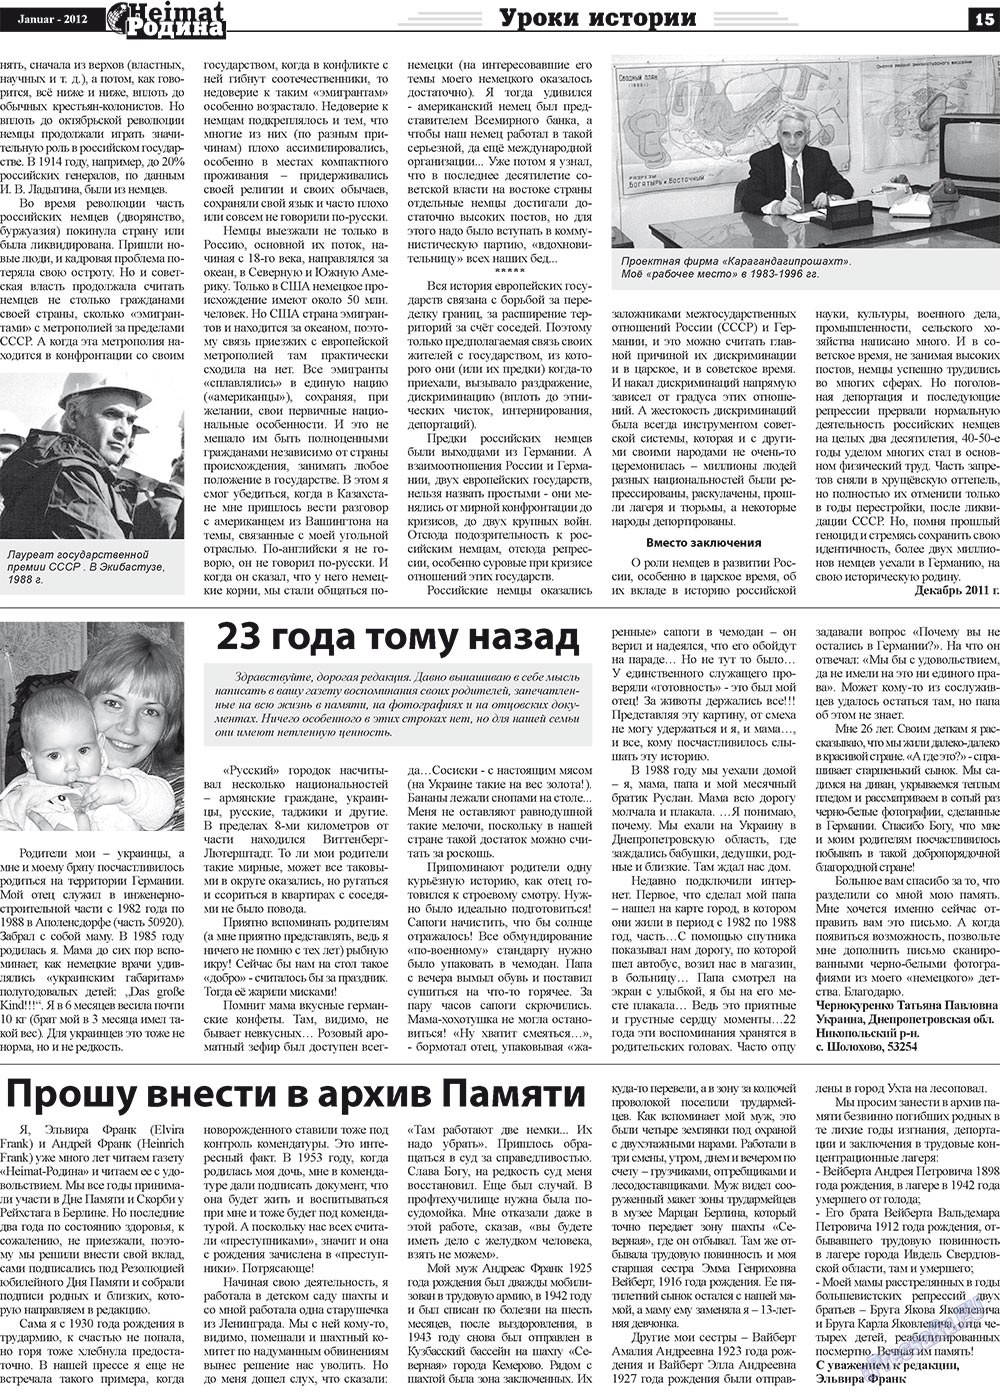 Heimat-Родина (газета). 2012 год, номер 1, стр. 15